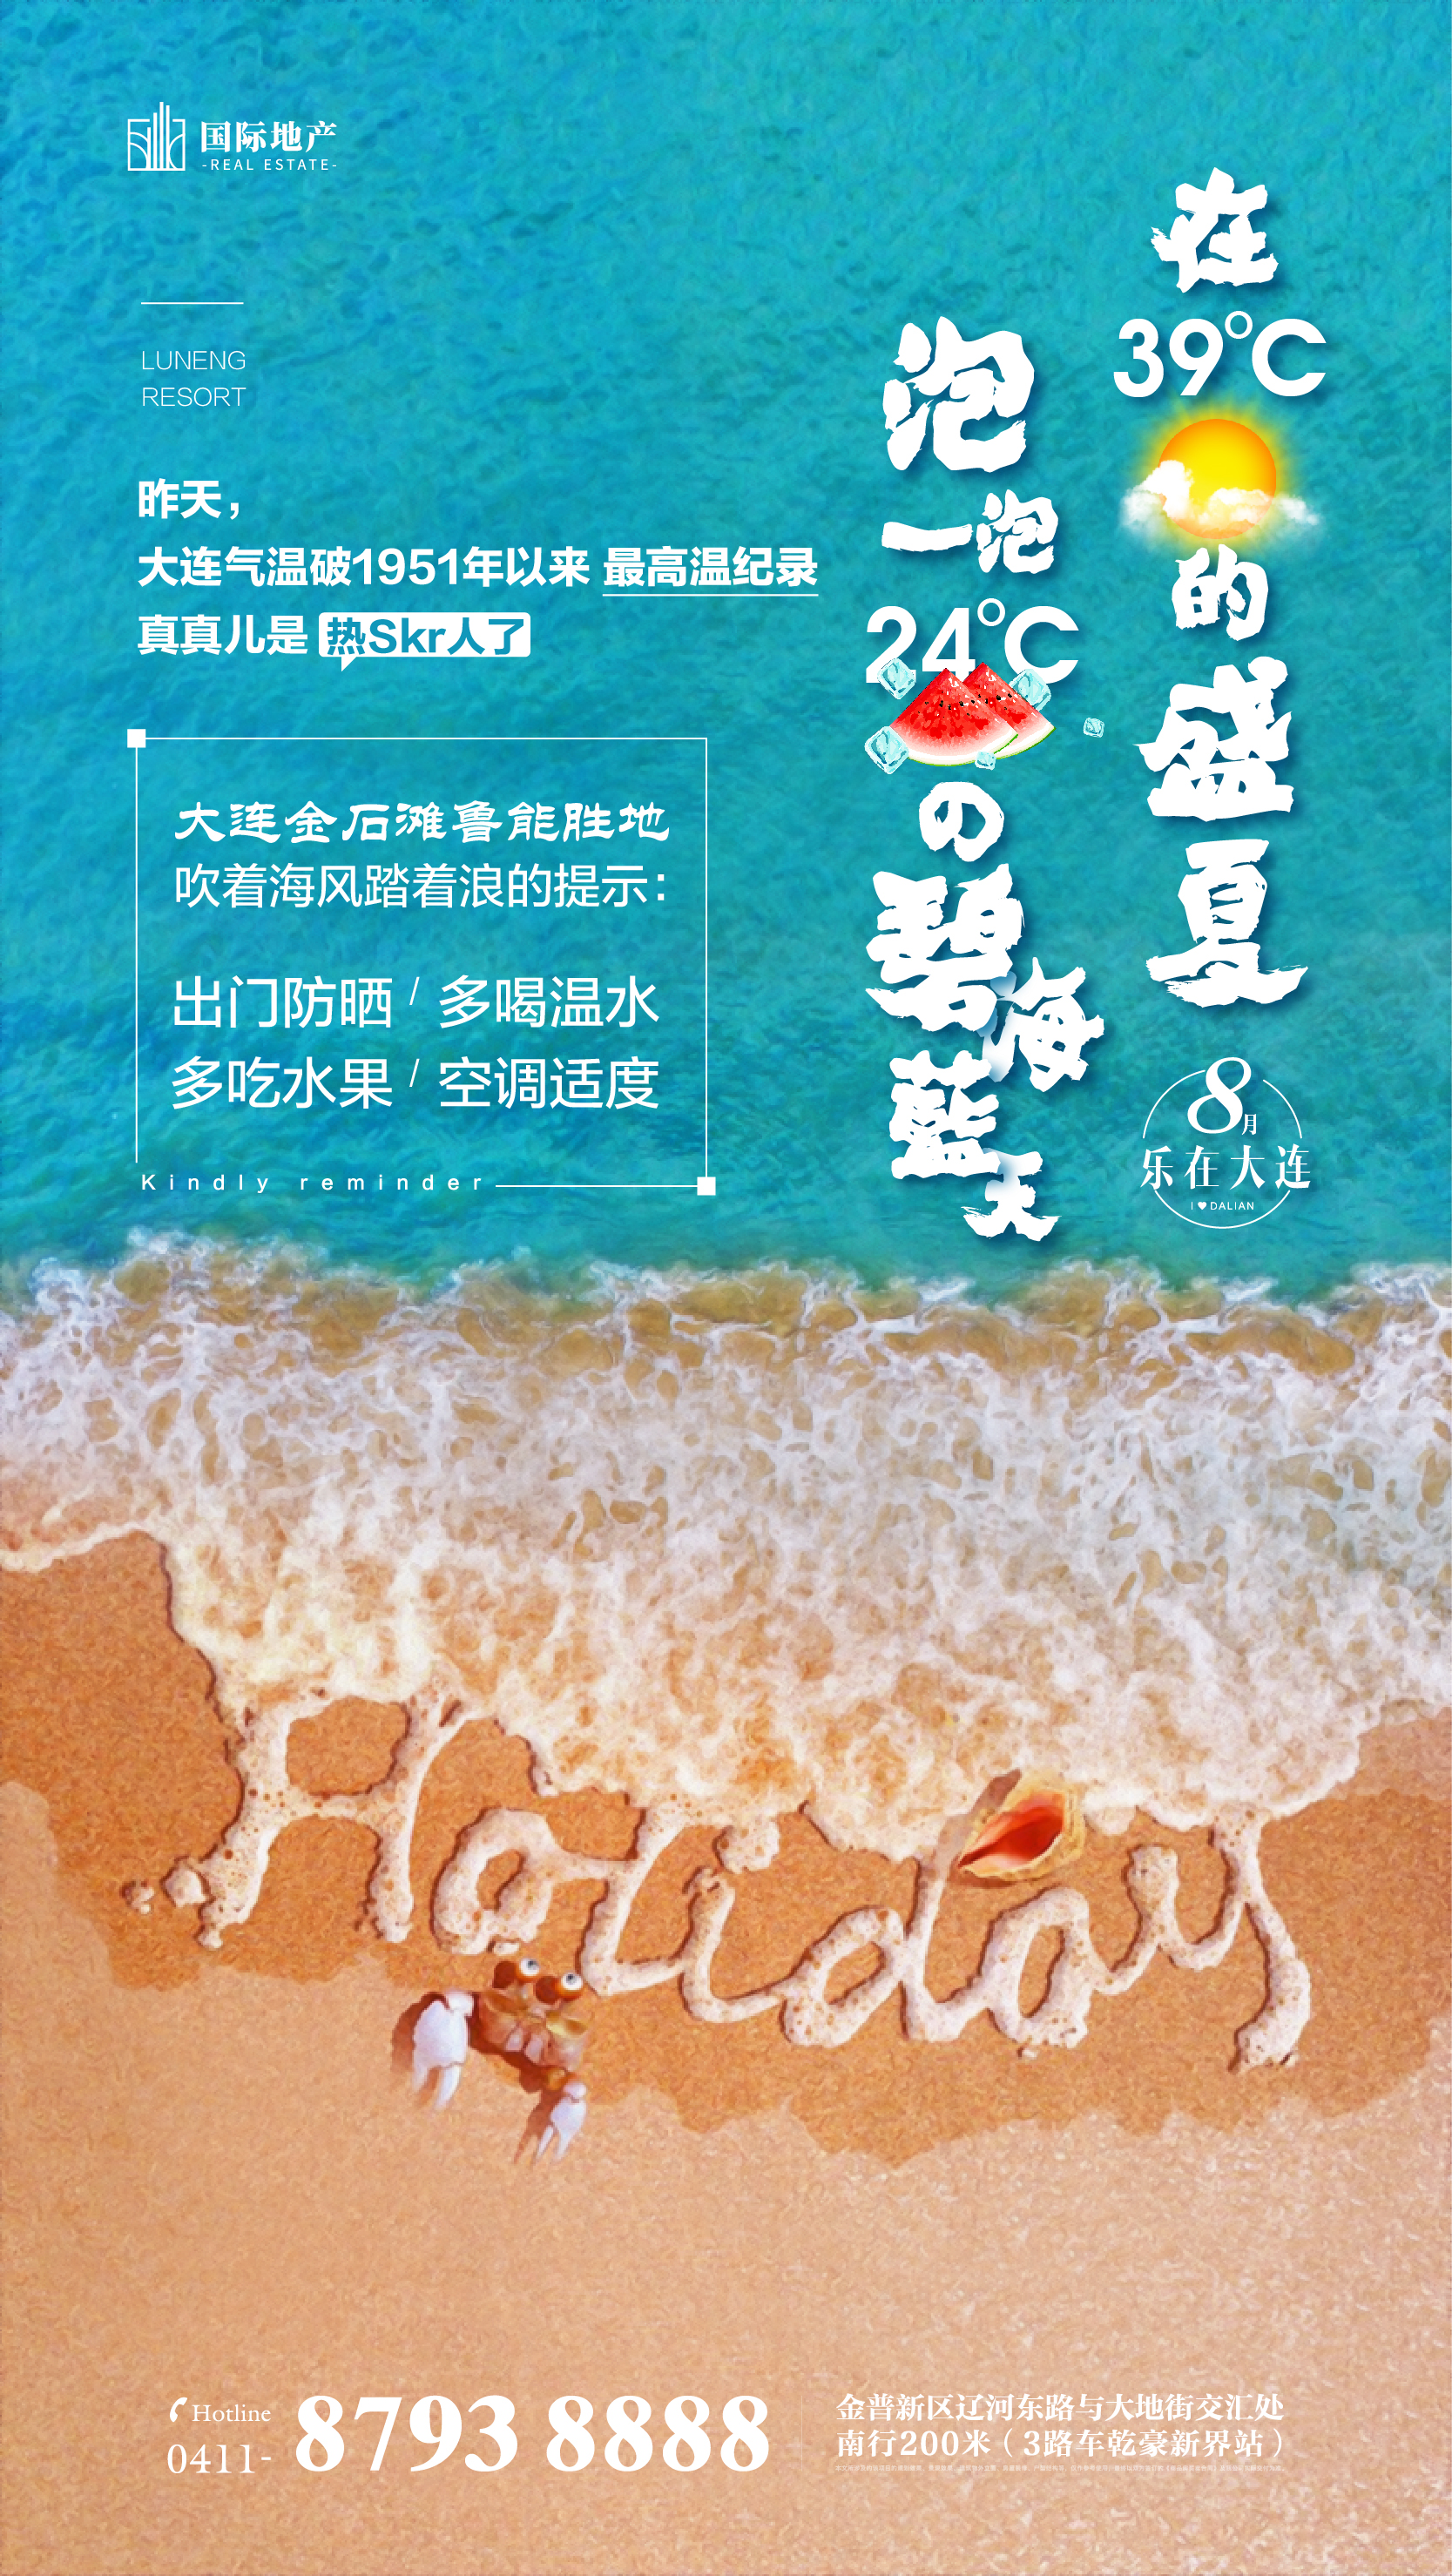 蓝色海滩旅游地产夏季清凉度假微信海报